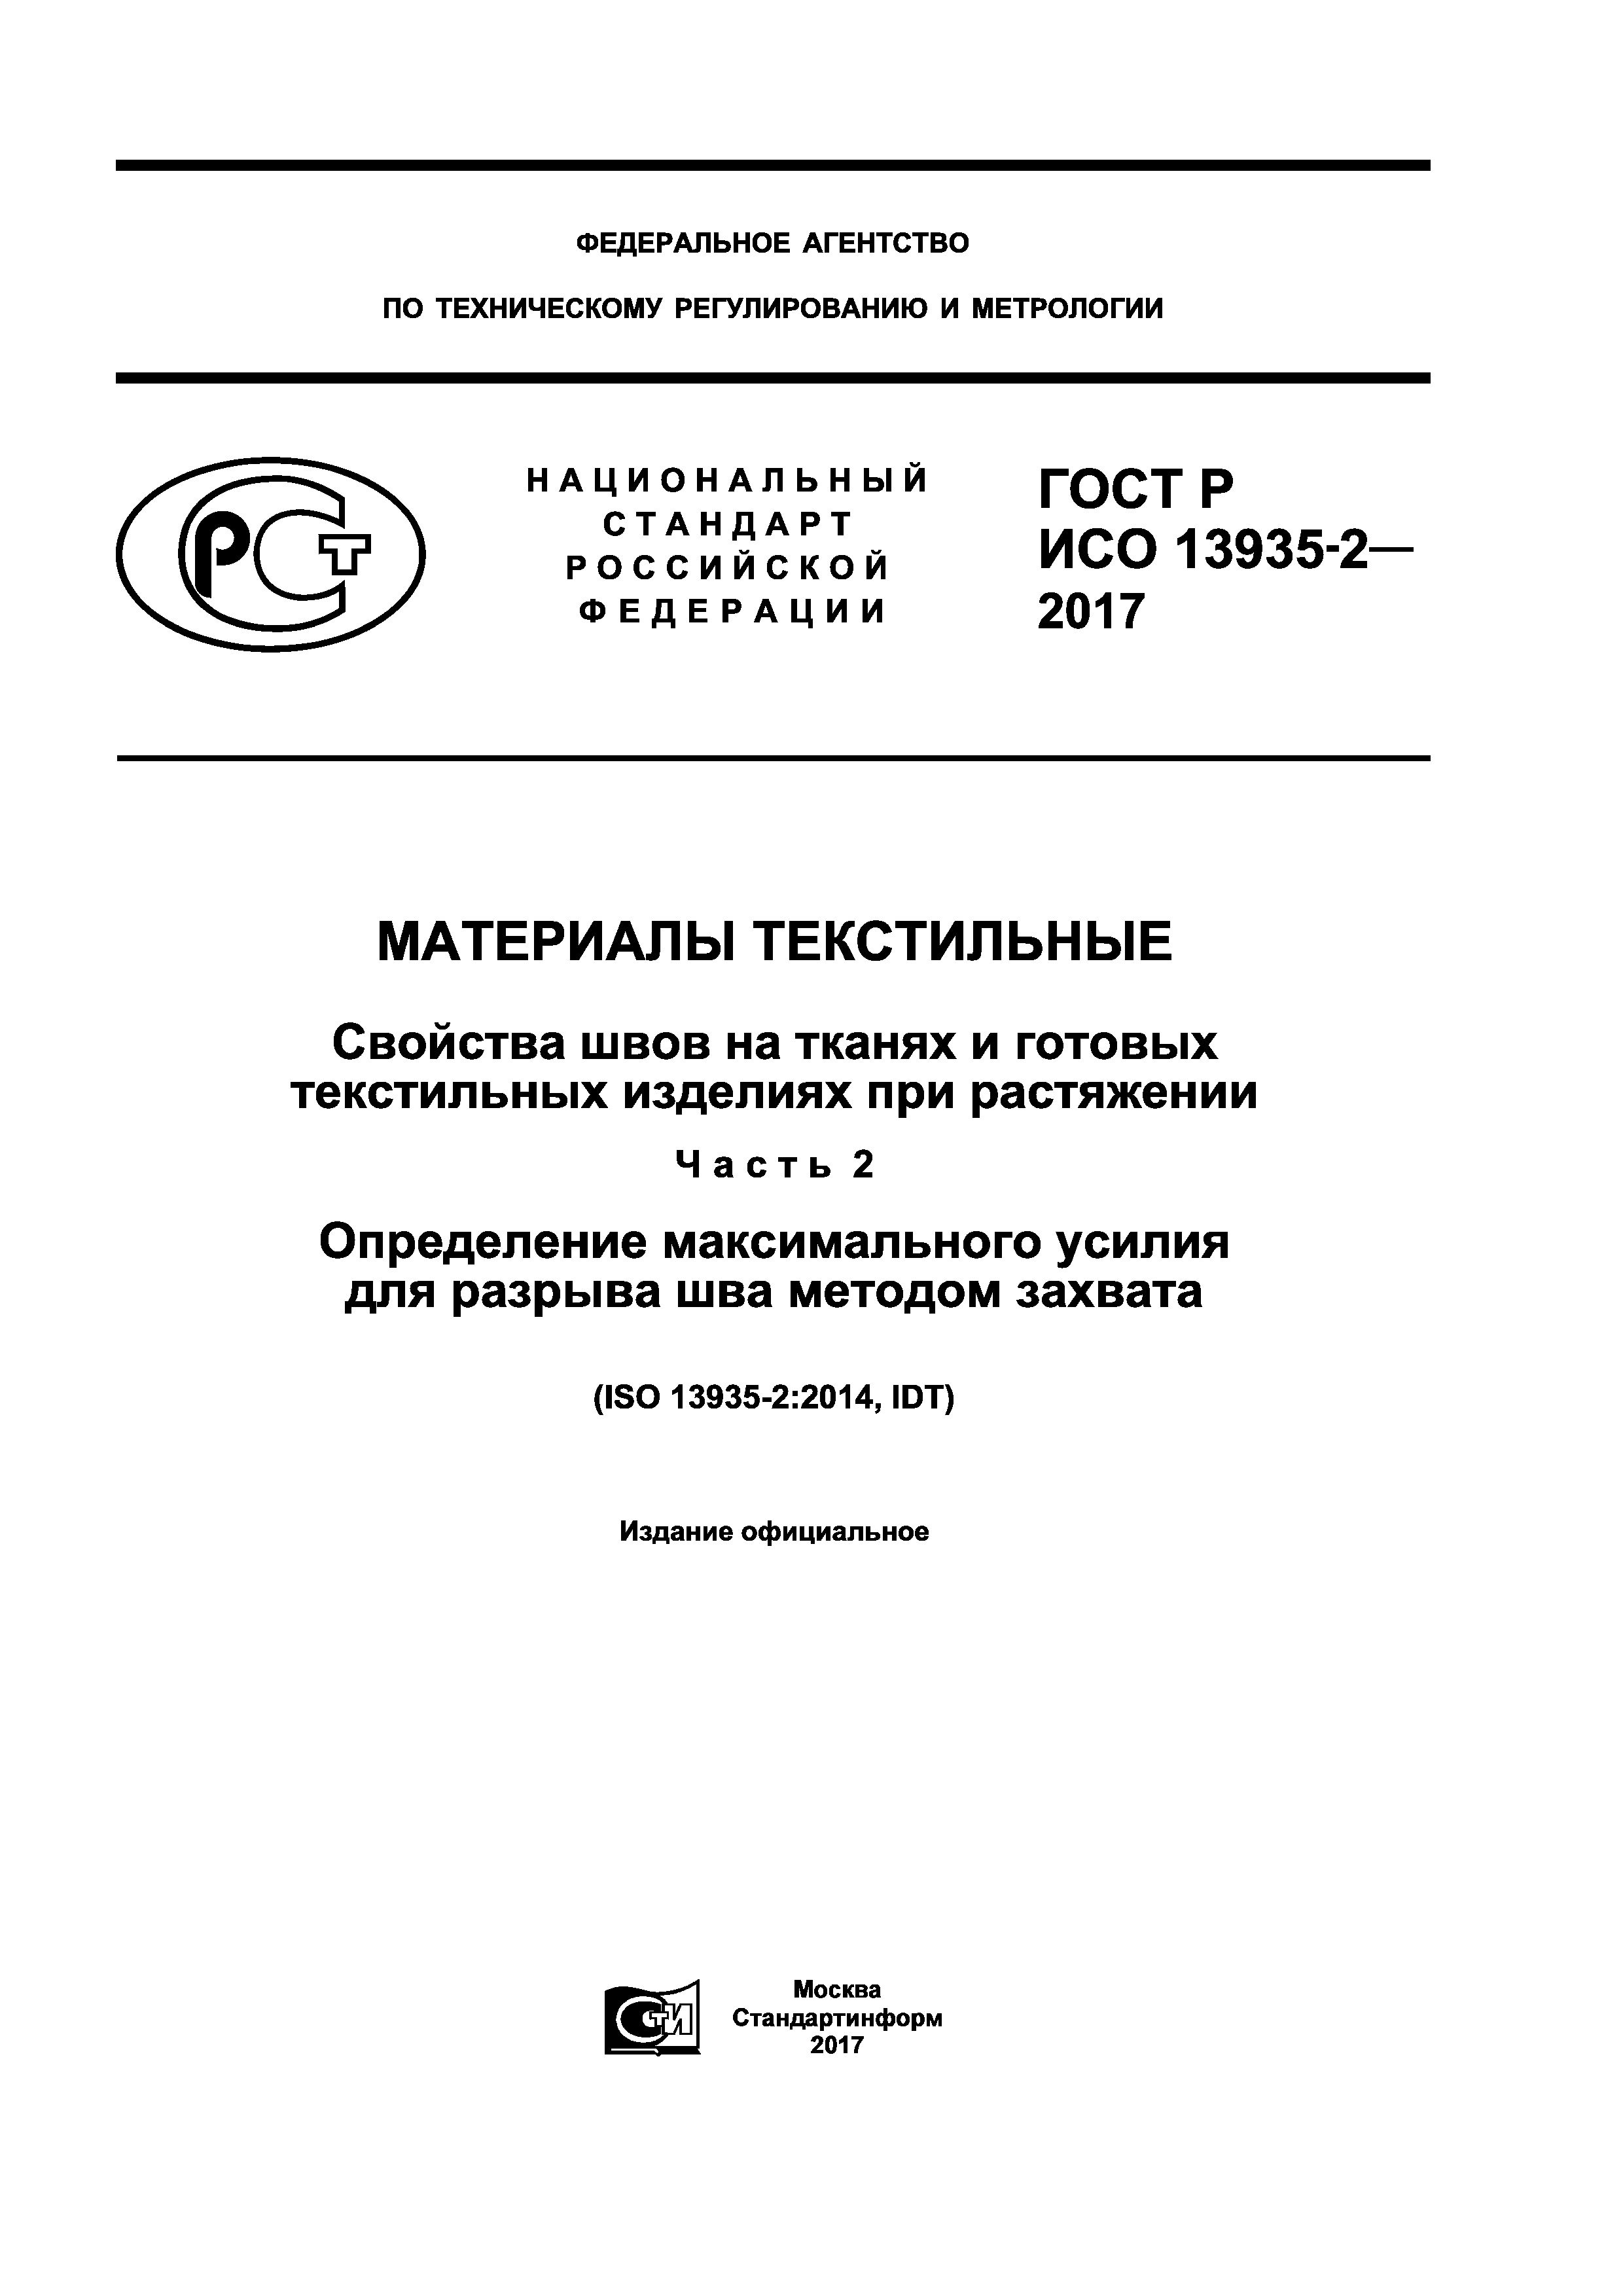 ГОСТ Р ИСО 13935-2-2017